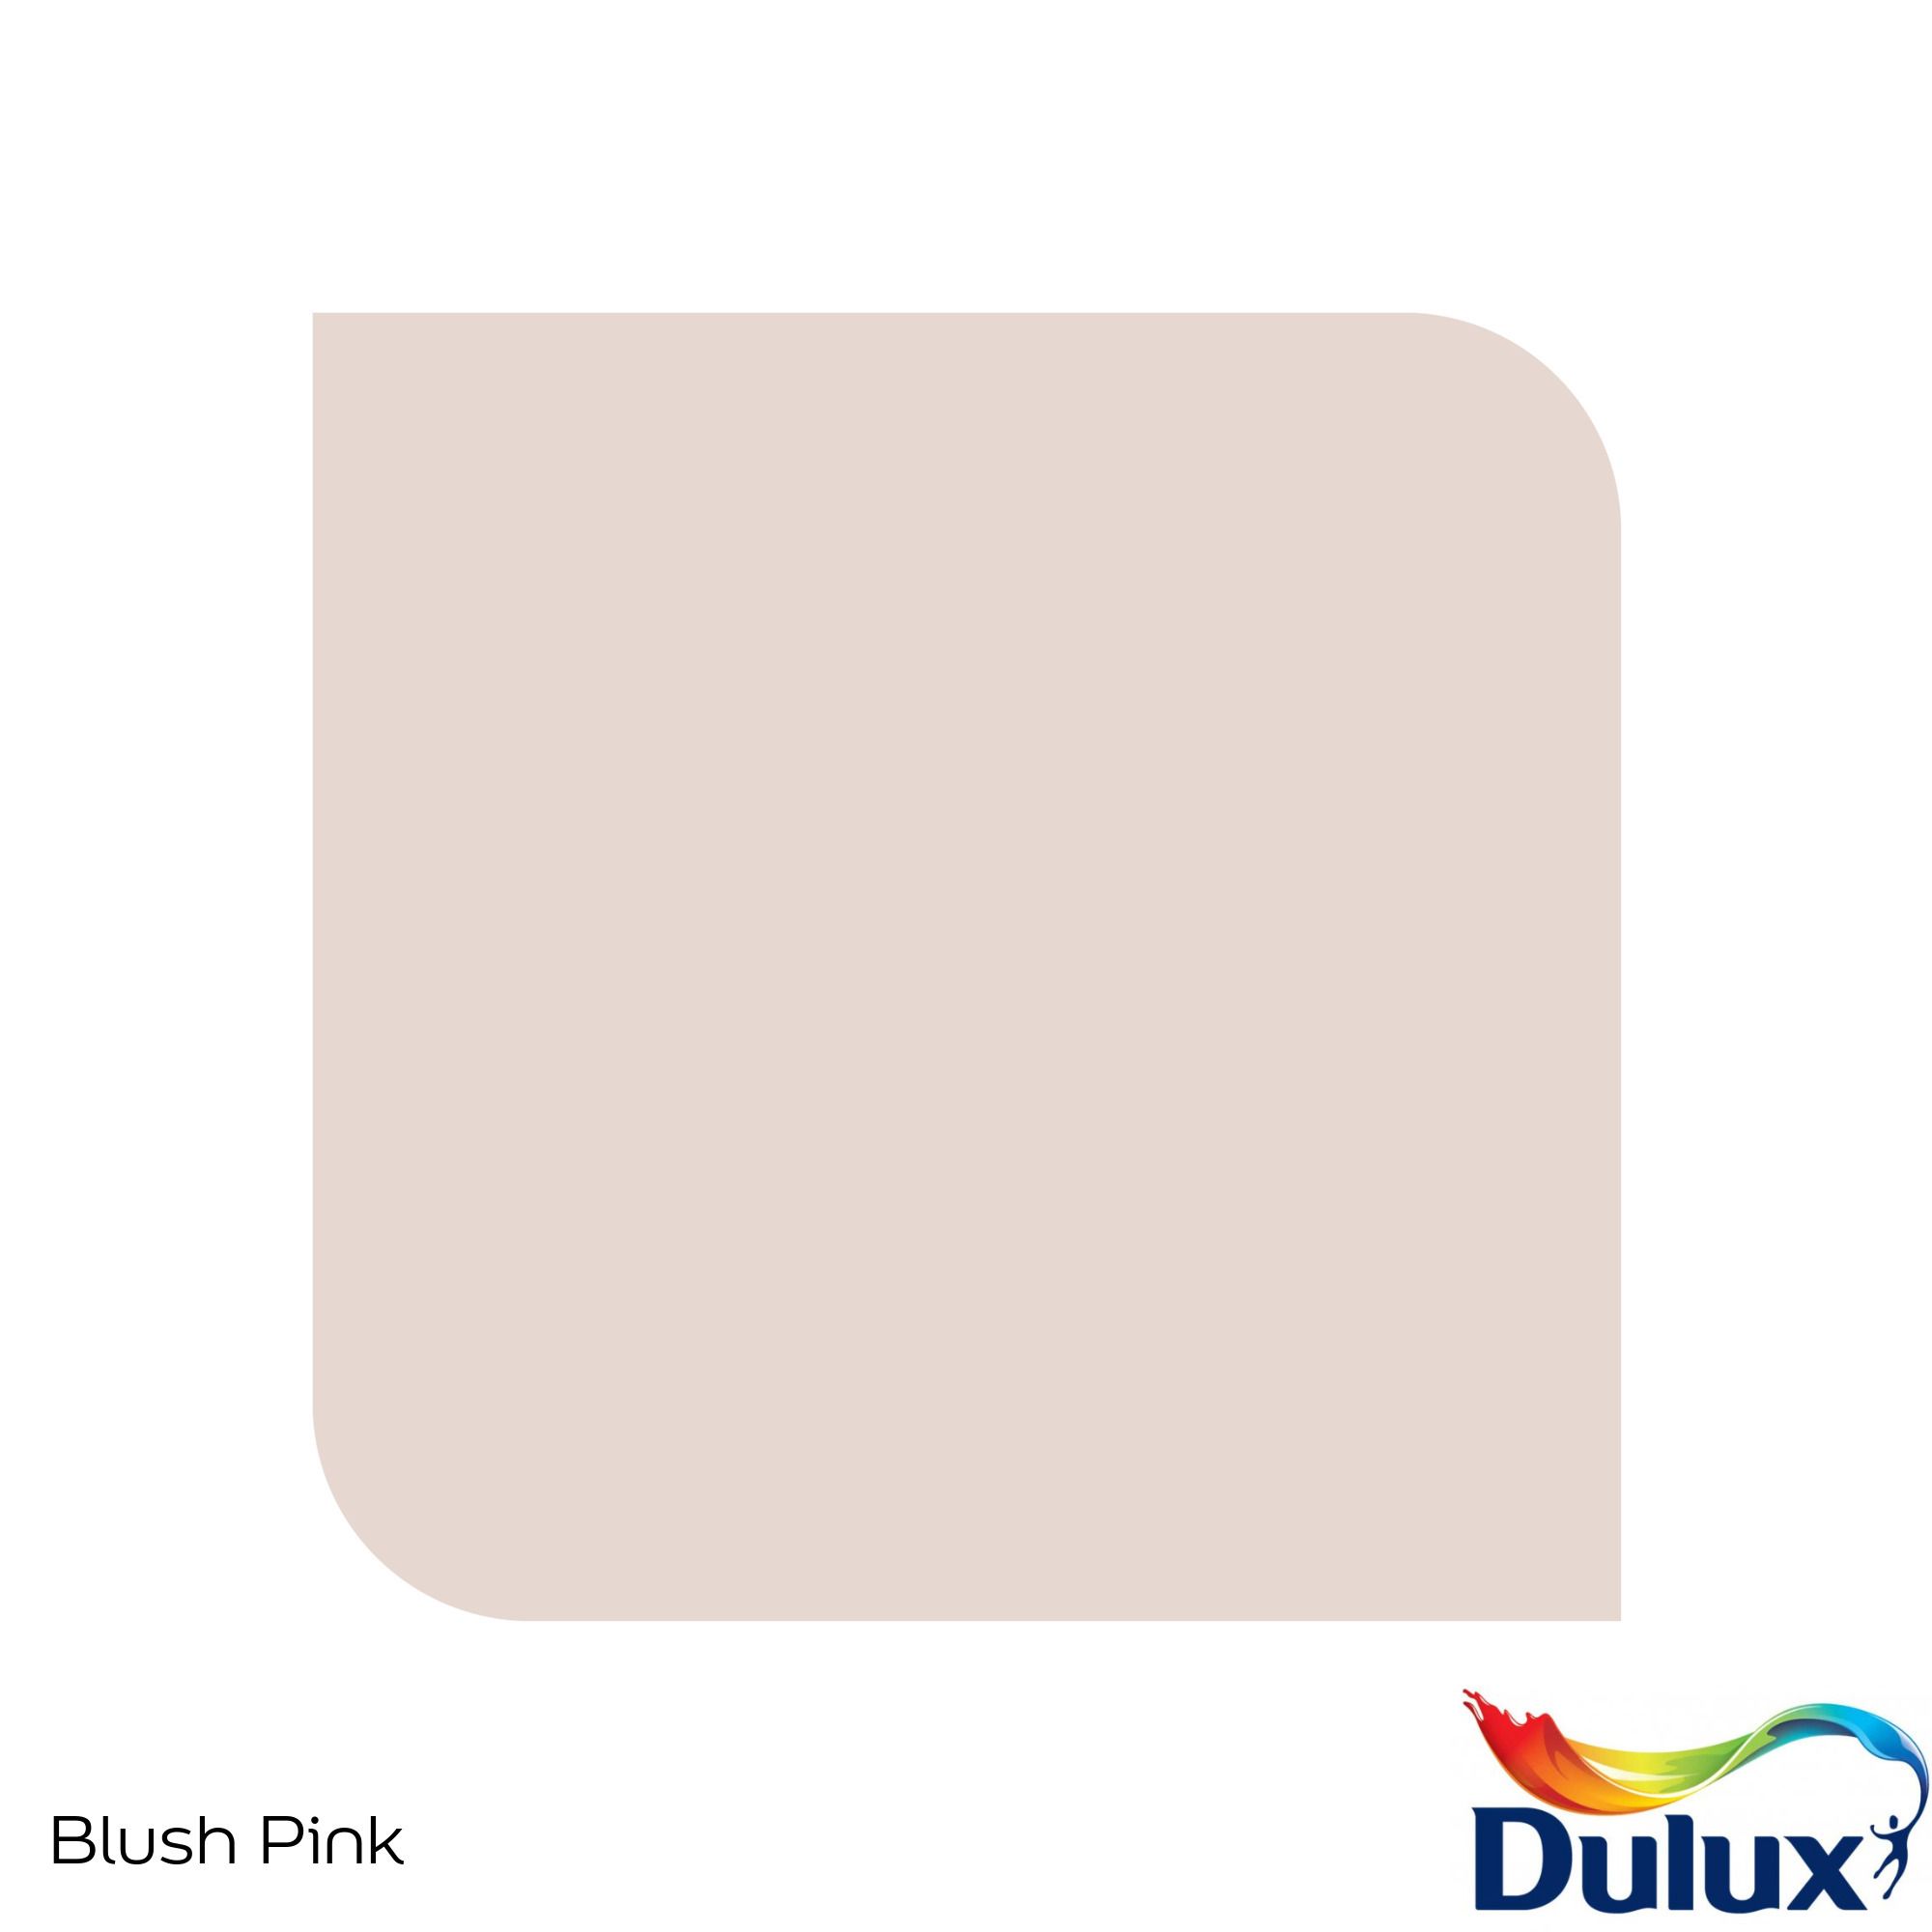 Dulux Standard Blush pink Matt Emulsion paint, 30ml Tester pot